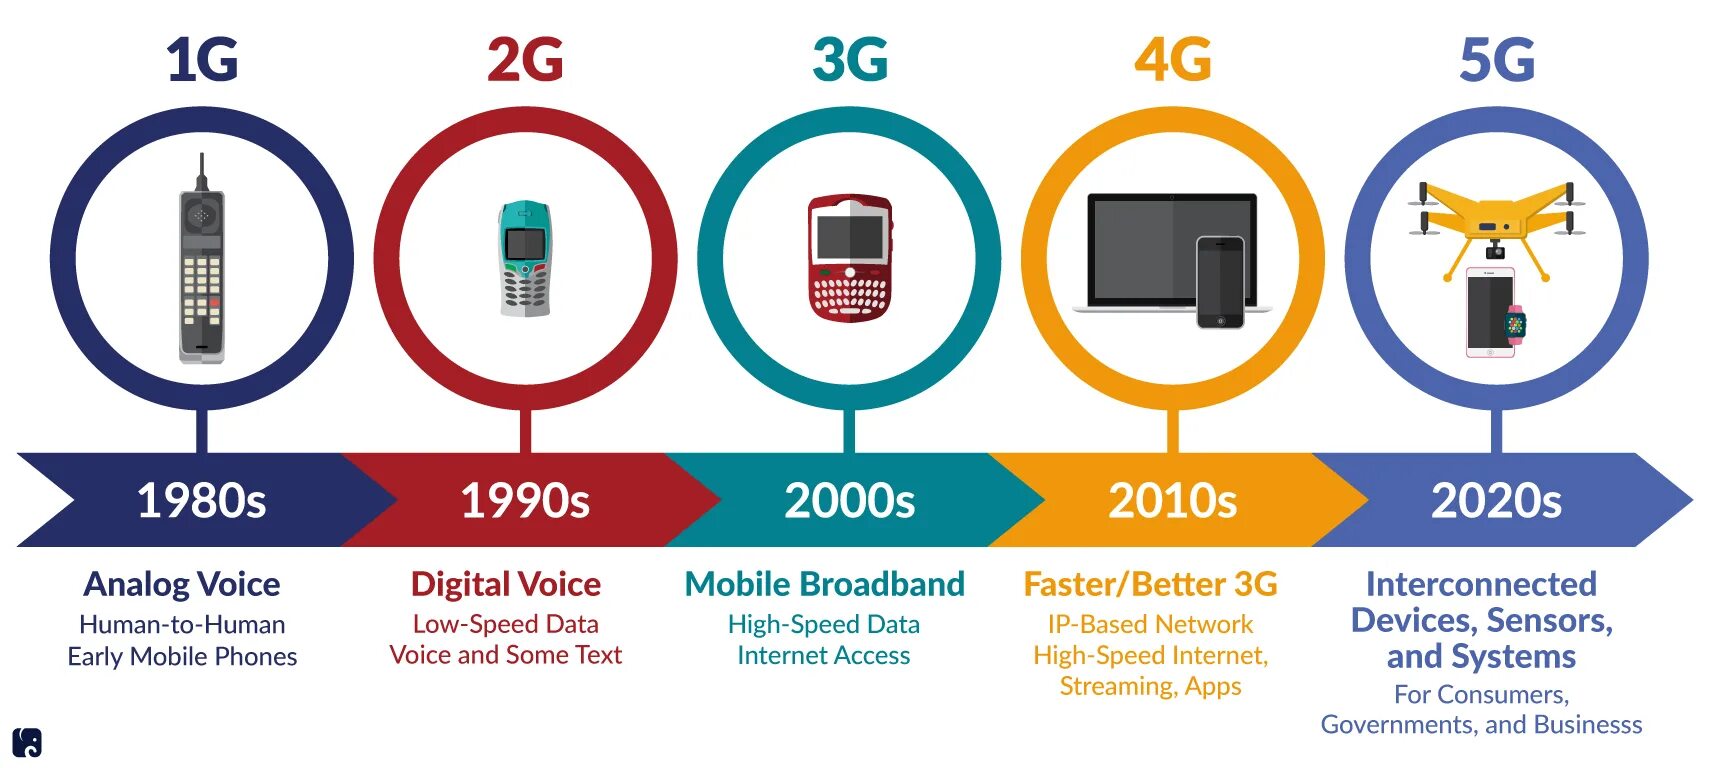 5mp 4g. Поколения сотовой связи 2g 3g и 4g. Технологии сотовой связи 2g 3g 4g. 4g стандарты сотовой сети. Сотовая связь 1g 2g 3g 4g 5g.